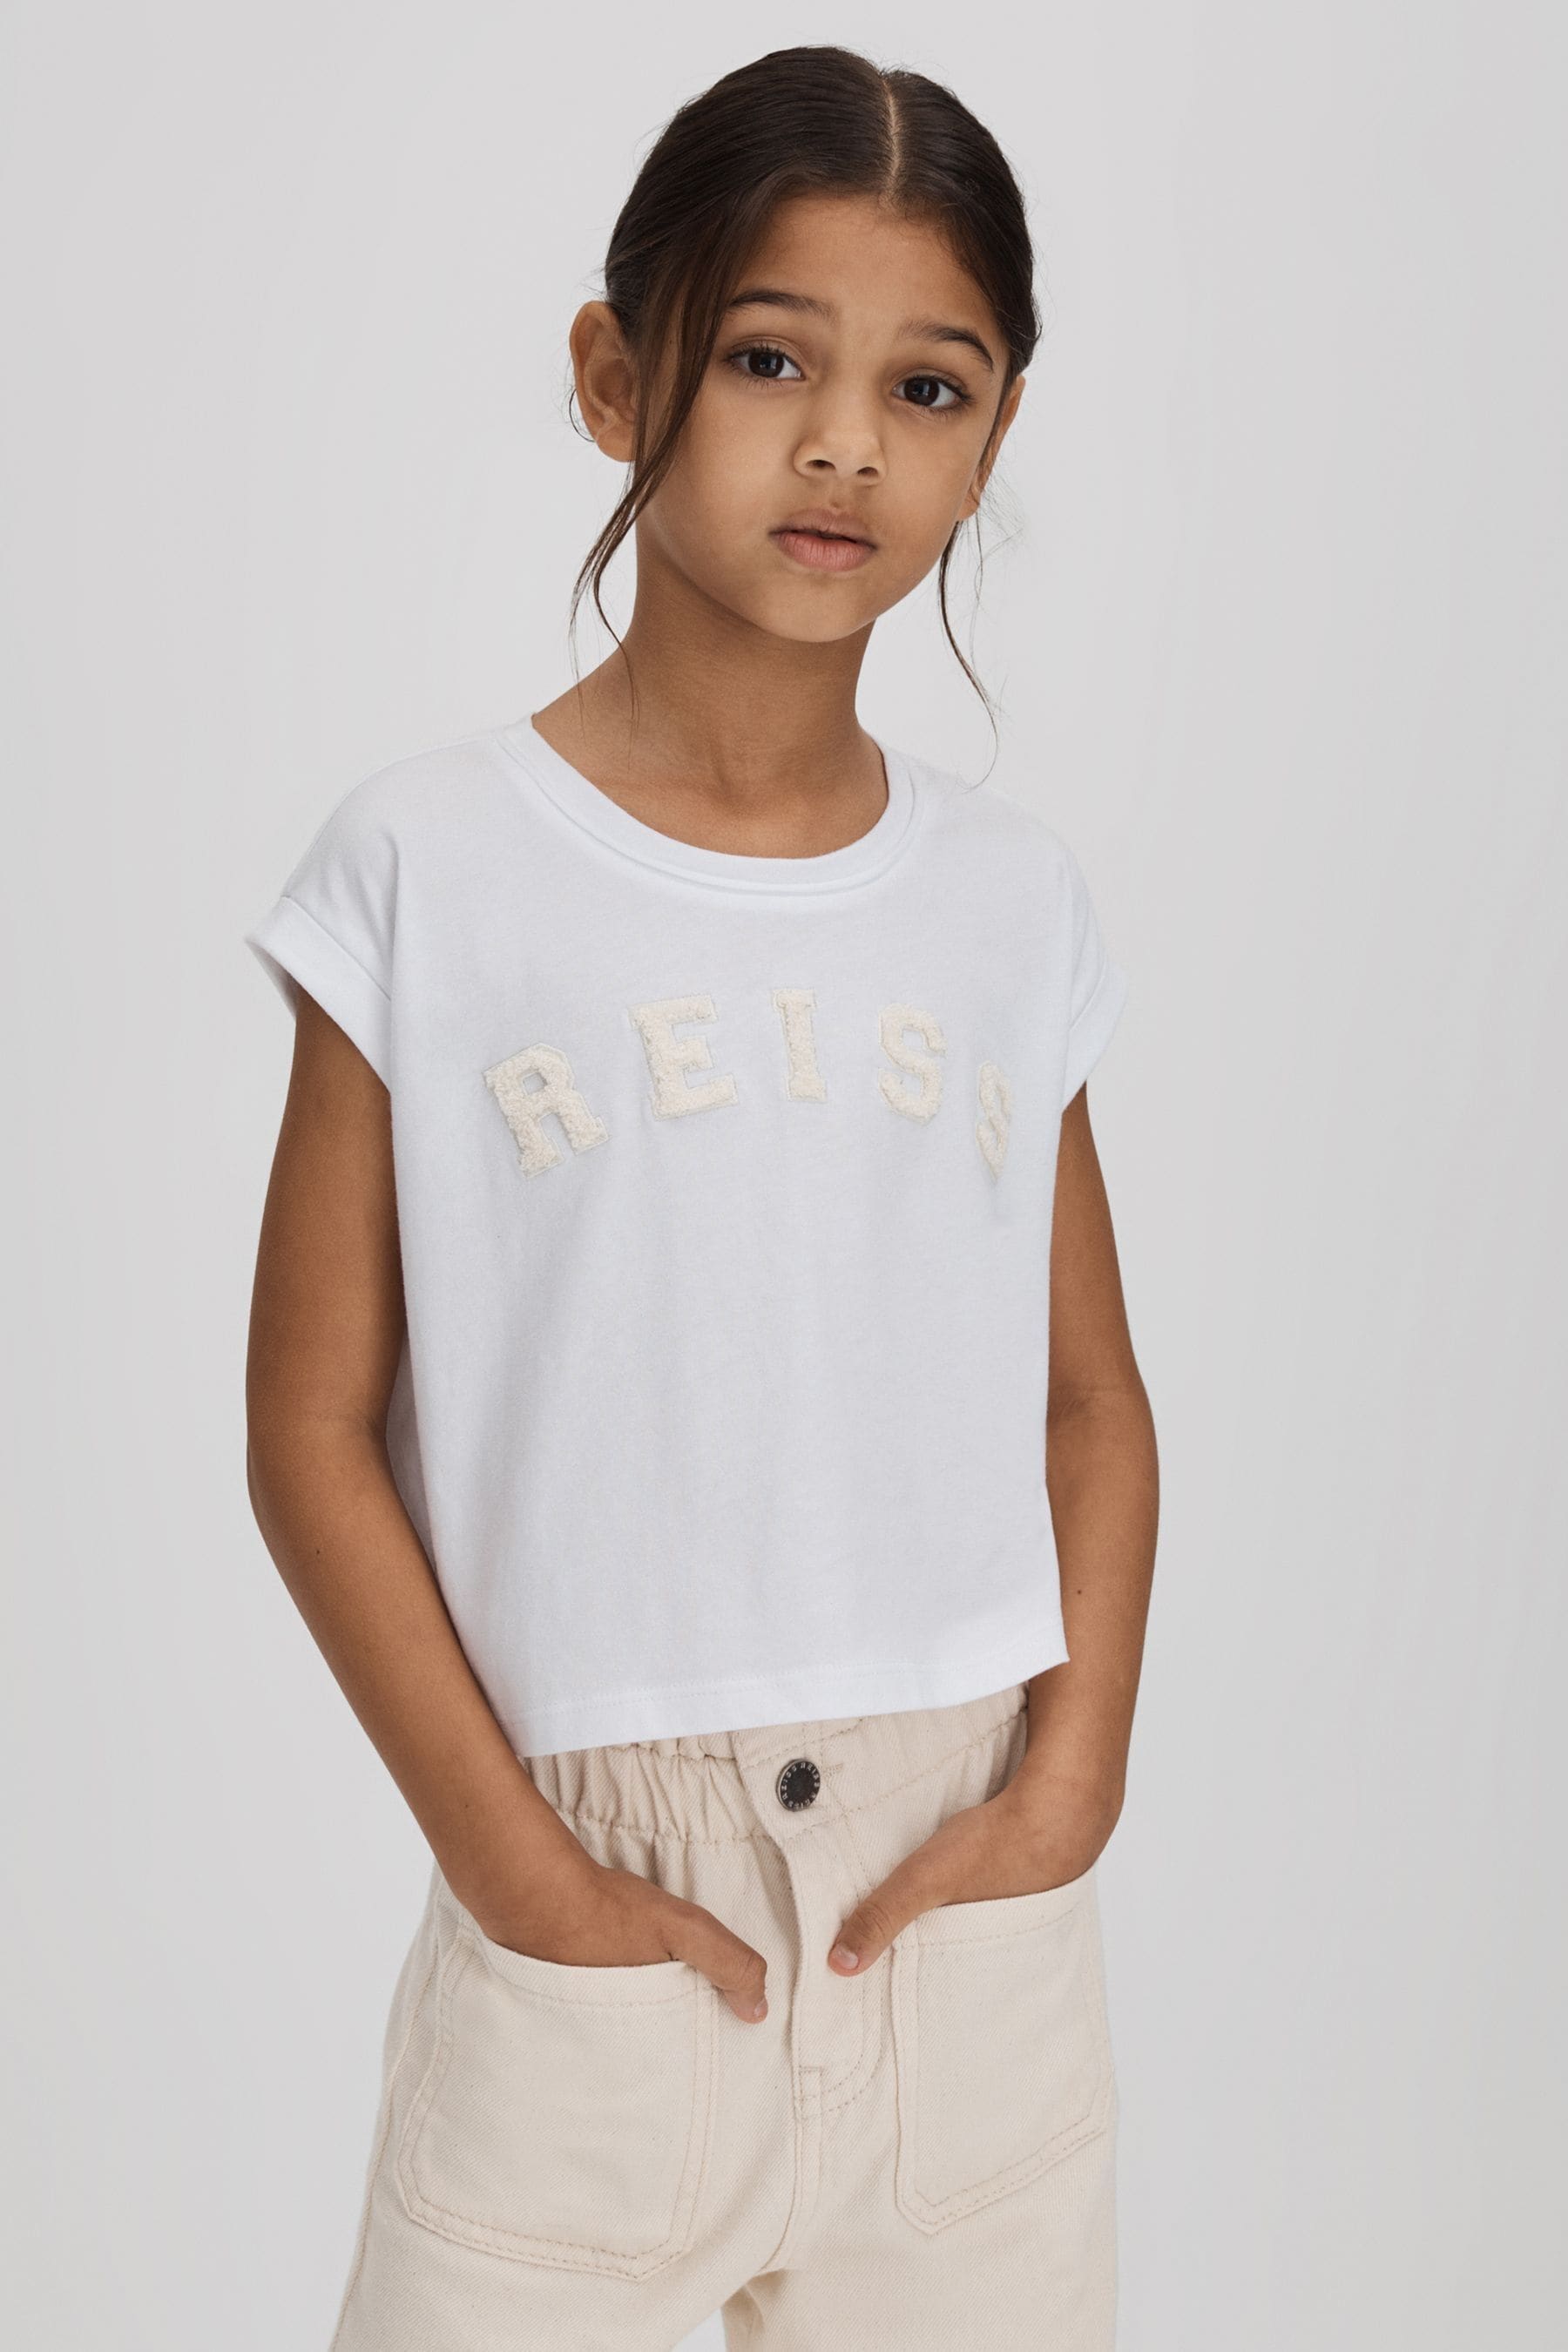 Reiss Kids' Taya - White Senior Textured Motif Cotton Crew Neck T-shirt, Uk 11-12 Yrs